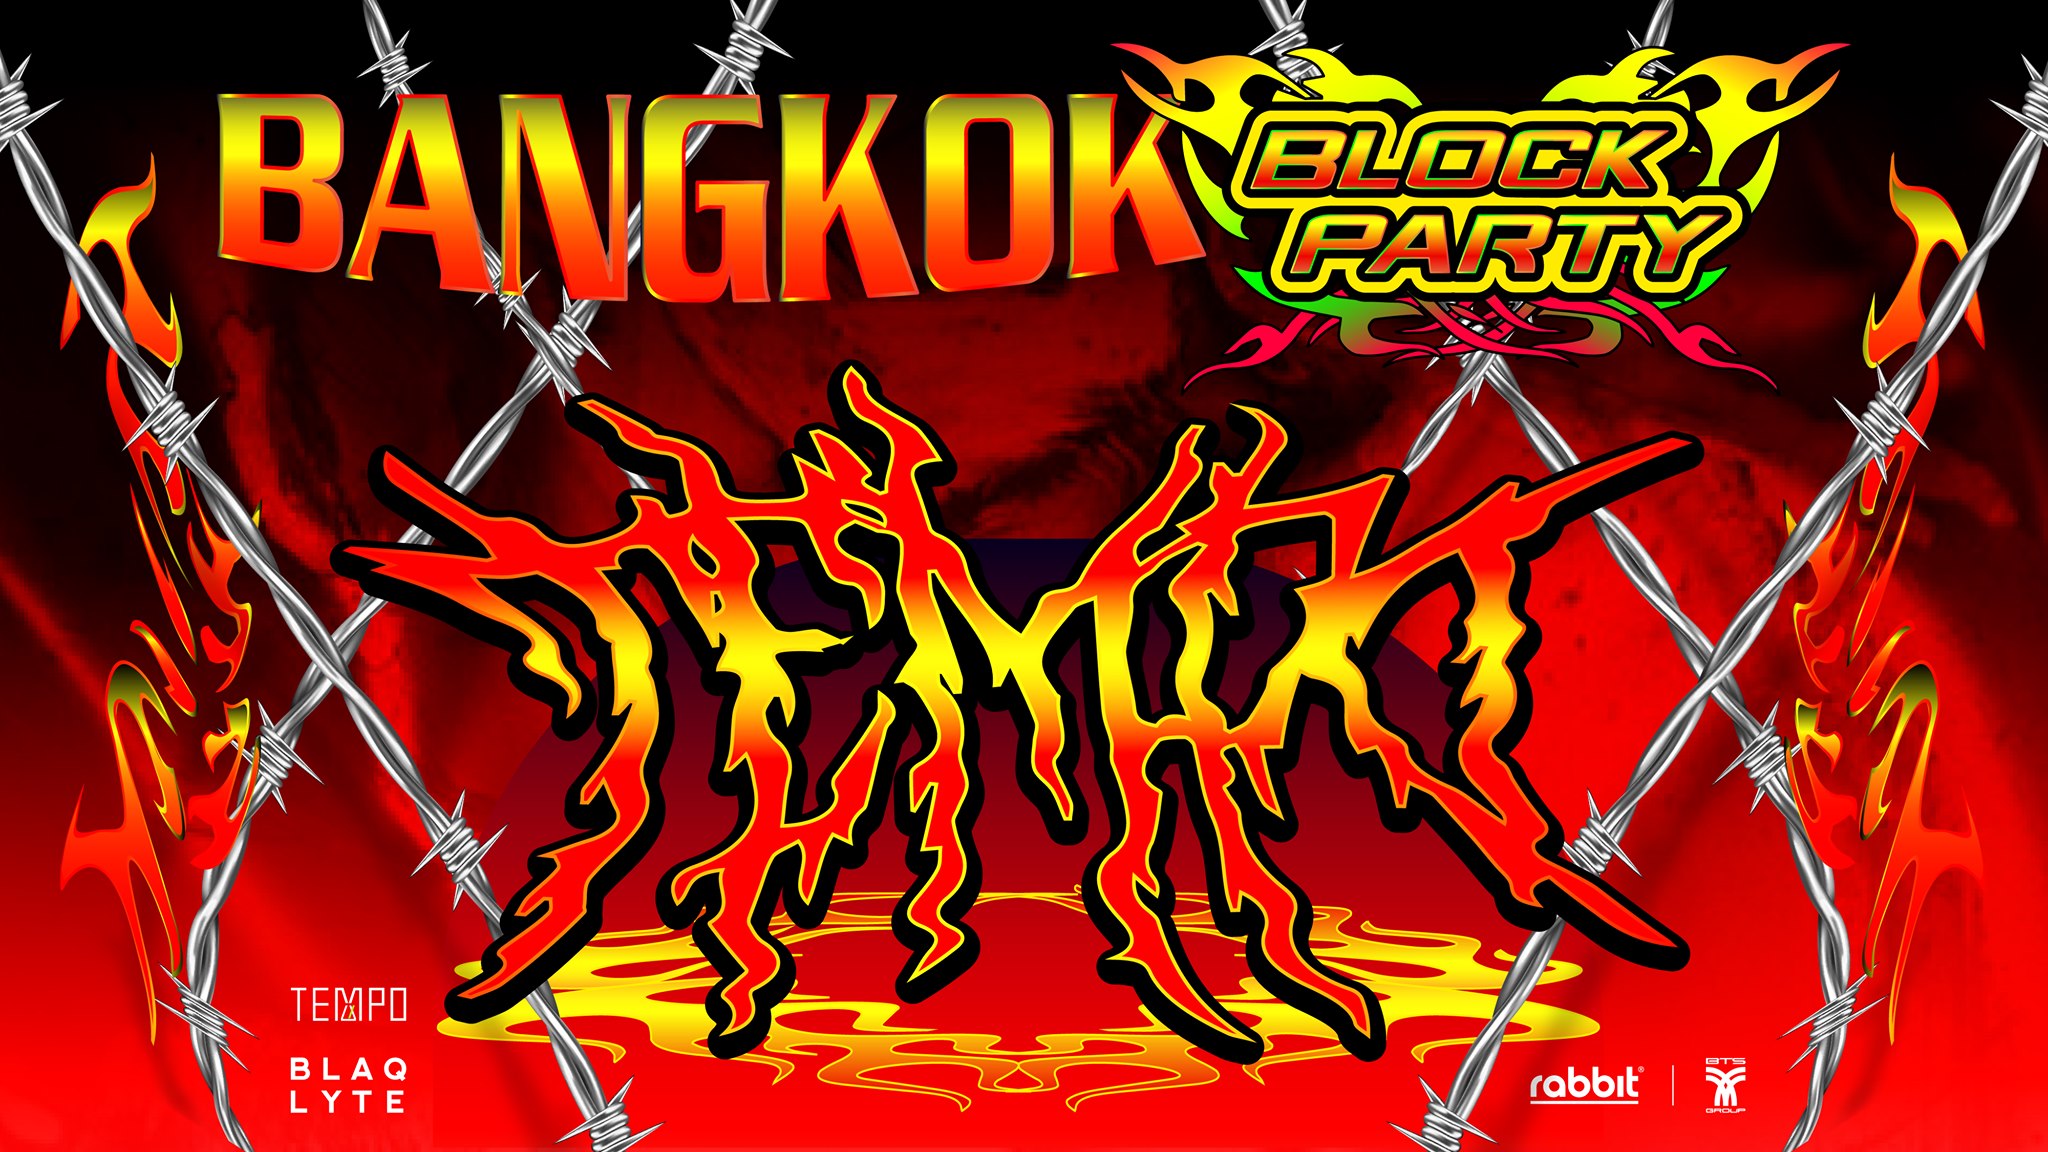 Bangkok Block Party 2020 จับมือกับ Tempo ชวนทุกคนไปเรฟกันทั้งวันทั้งคืน